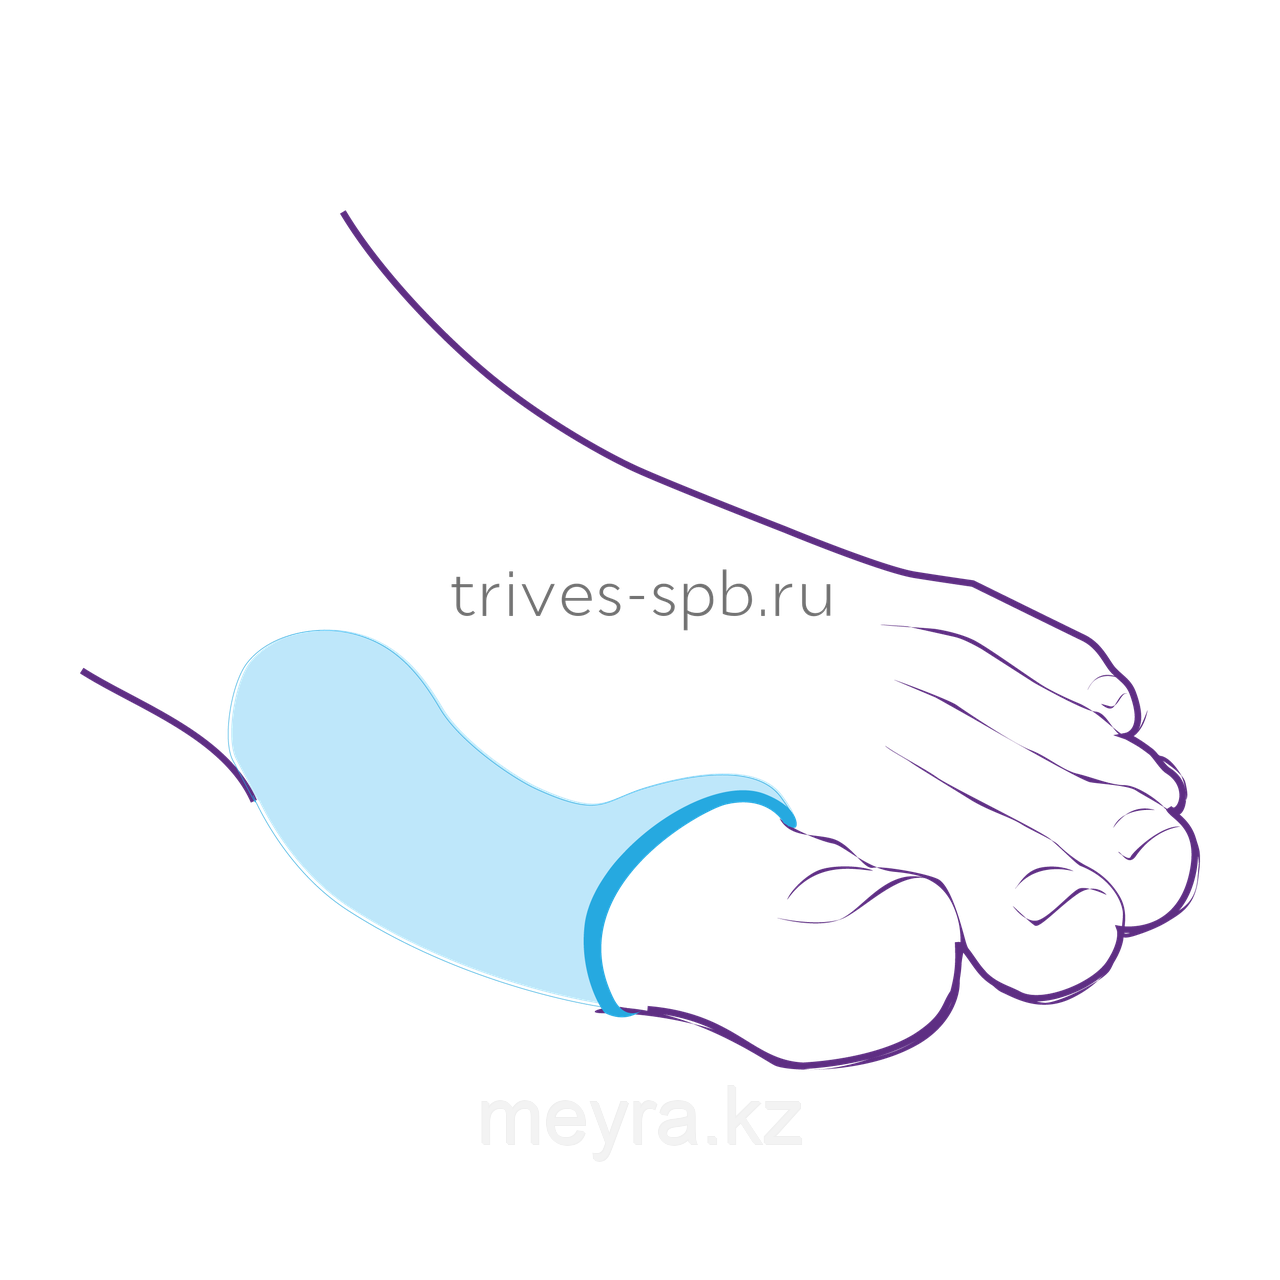 Протектор силиконовый для защиты сустава большого пальца стопы, фото 1